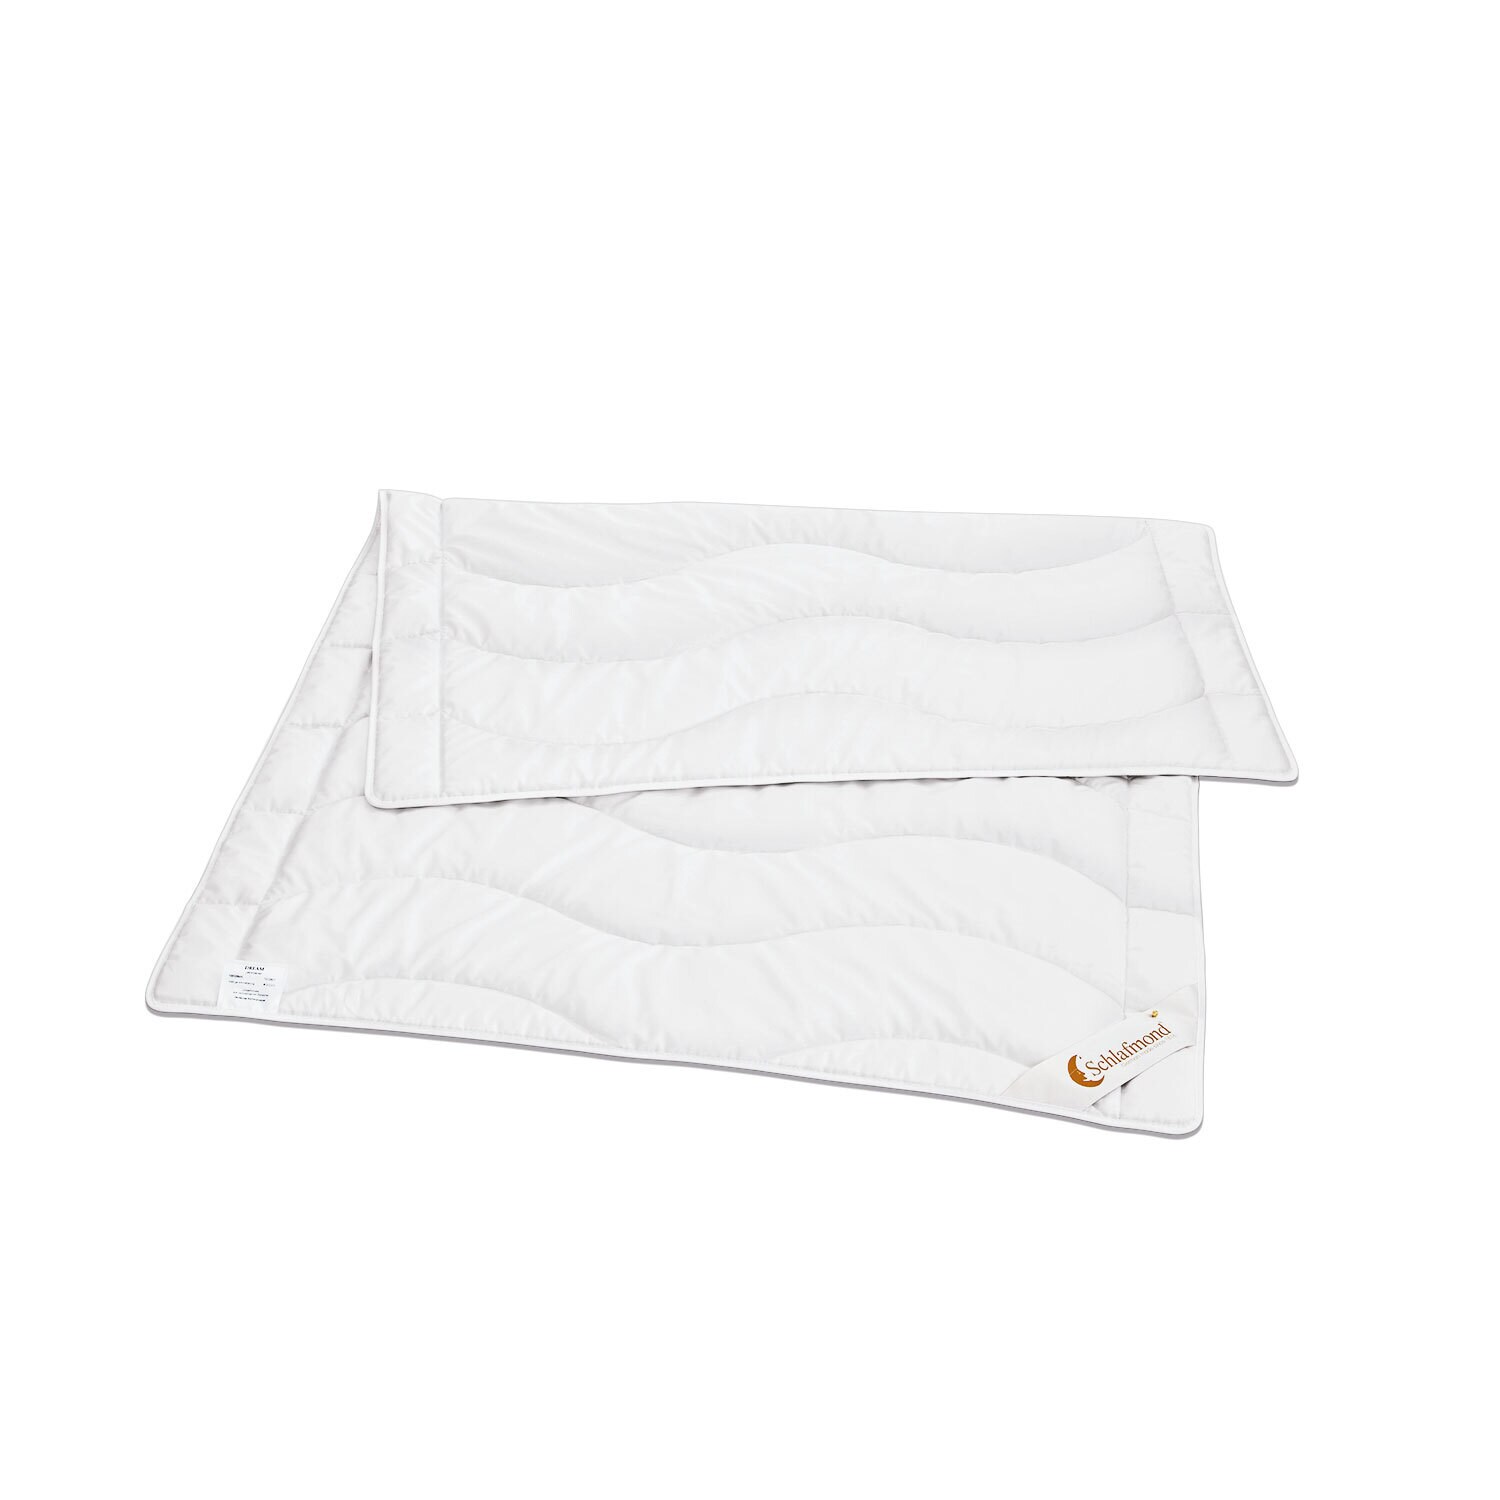 Schlafmond Tussah-Wildseiden-Leichtdecke DREAM 155 x 220 cm 570 g weiß